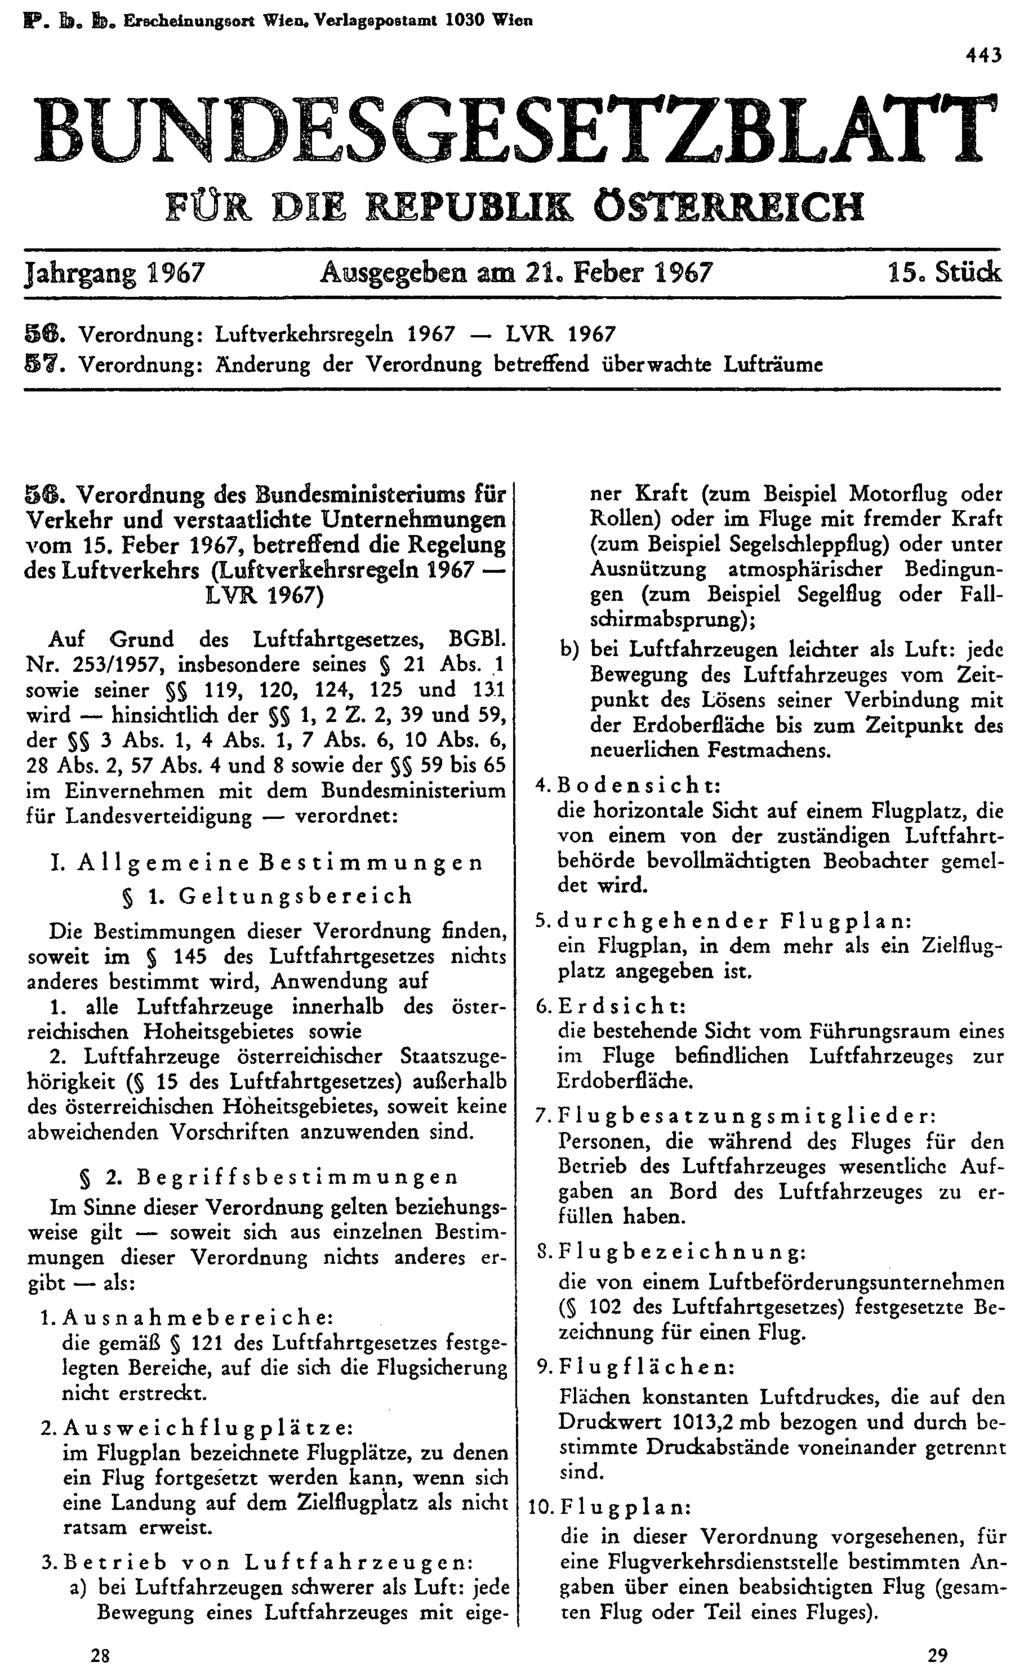 P. b. b. Erscheinungsort Wien. Verlagspostamt 1030 Wien BUNDESGESETZBLATT FÜR DIE REPUBLIK ÖSTERREICH Jahrgang 1967 Ausgegeben am 21. Feber 1967 15. Stück 56.